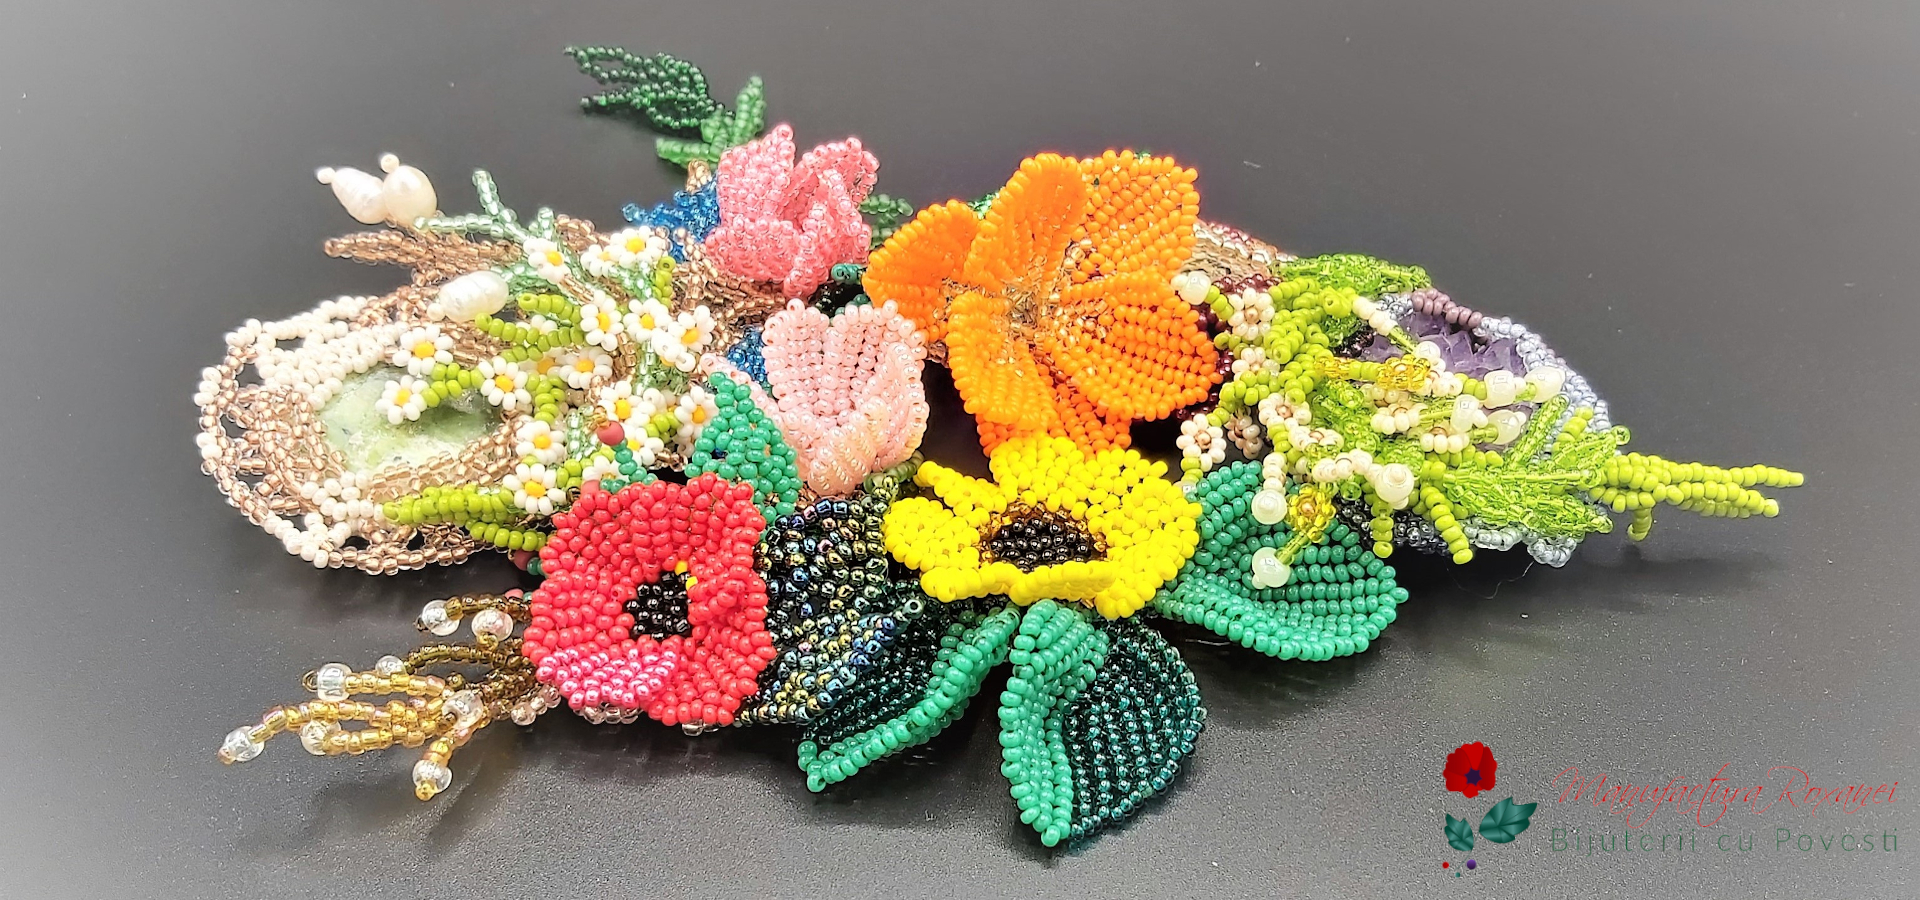 #coperta #brose #floare #brandusa #jasp #agat #coral #rosu #roz #albastru #verde #manufactura roxanei #preciosa #margele #bijuterii #bijuterii craiova #cadou #handmade #lucrat manual #jewelry #broch